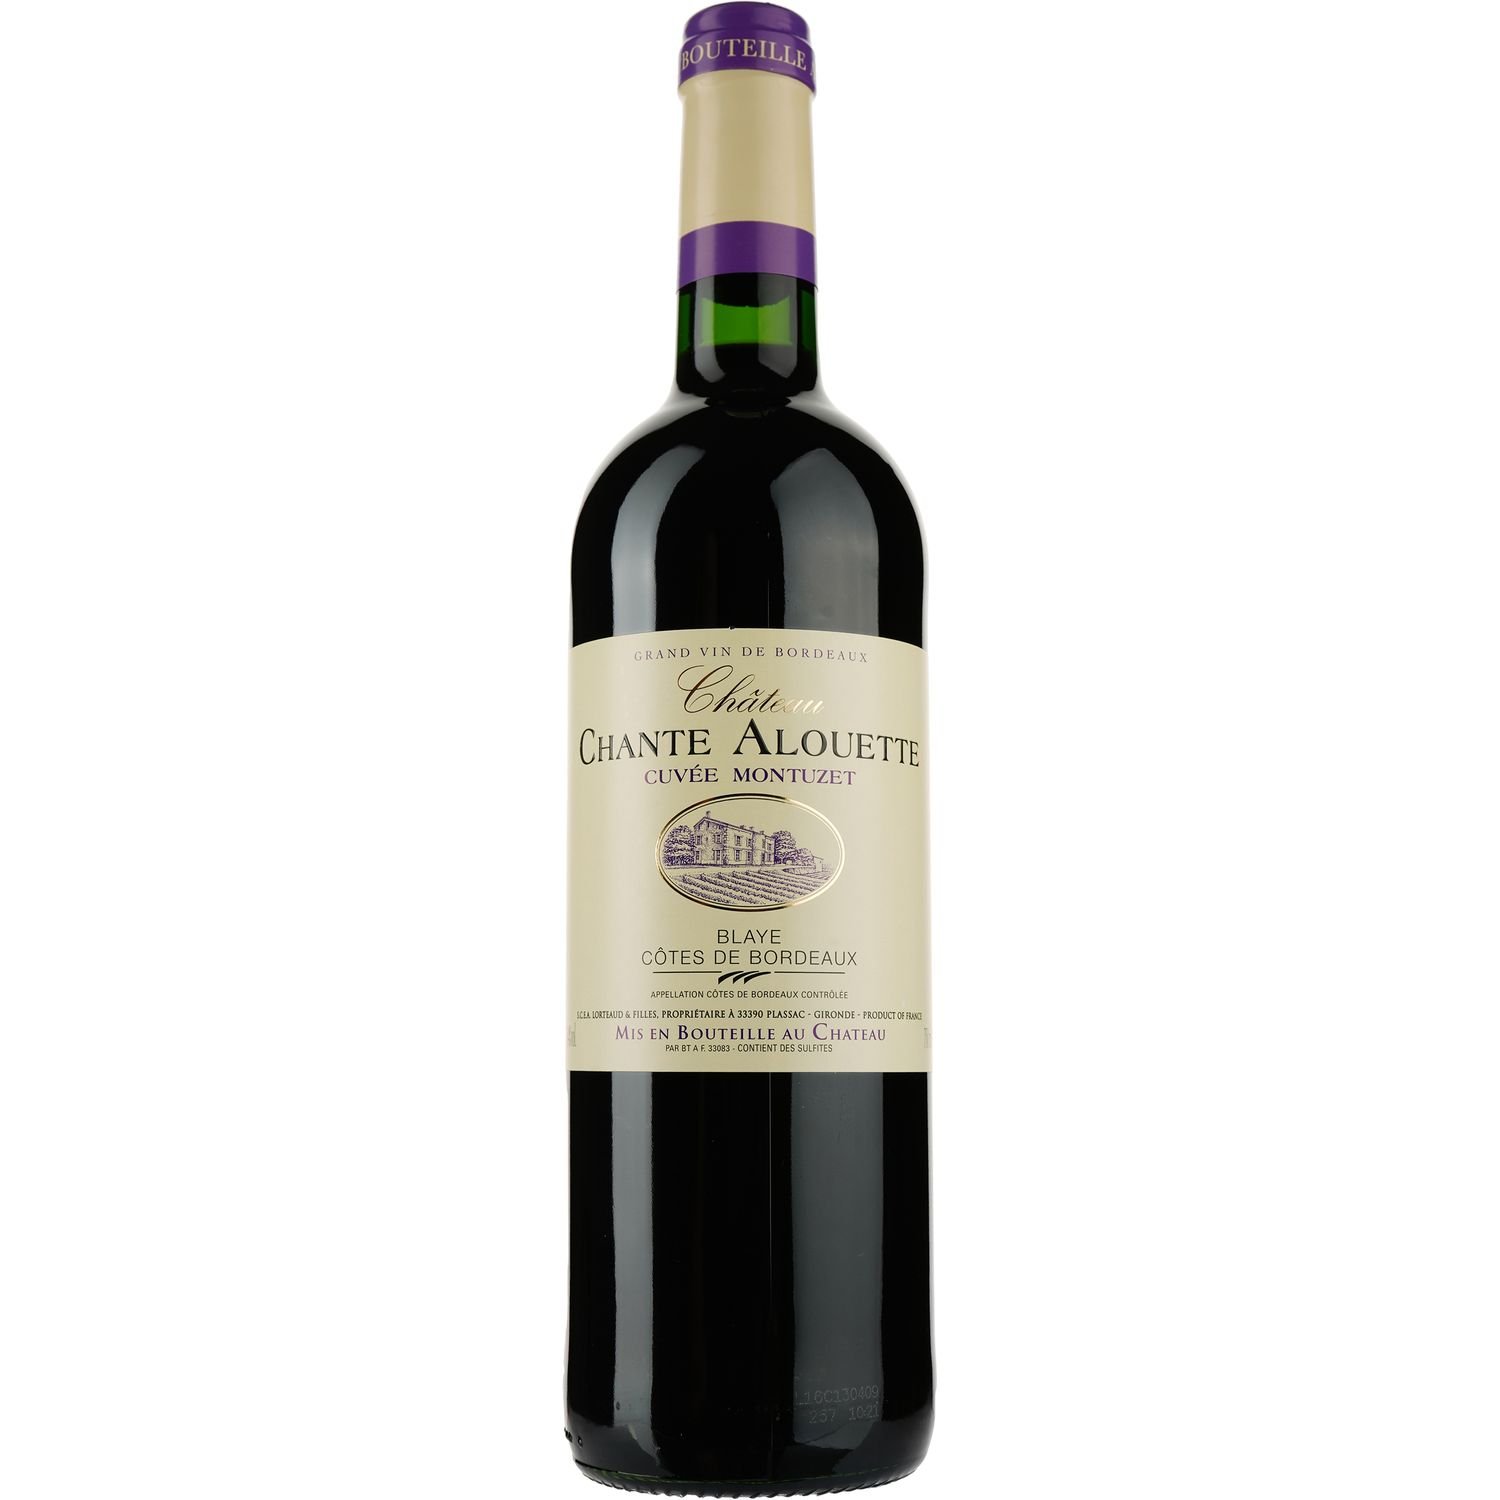 Вино Cuvee Montuzet Chateau Chante Alouette AOP Blaye Cotes de Bordeaux 2015, красное, сухое, 0,75 л - фото 1